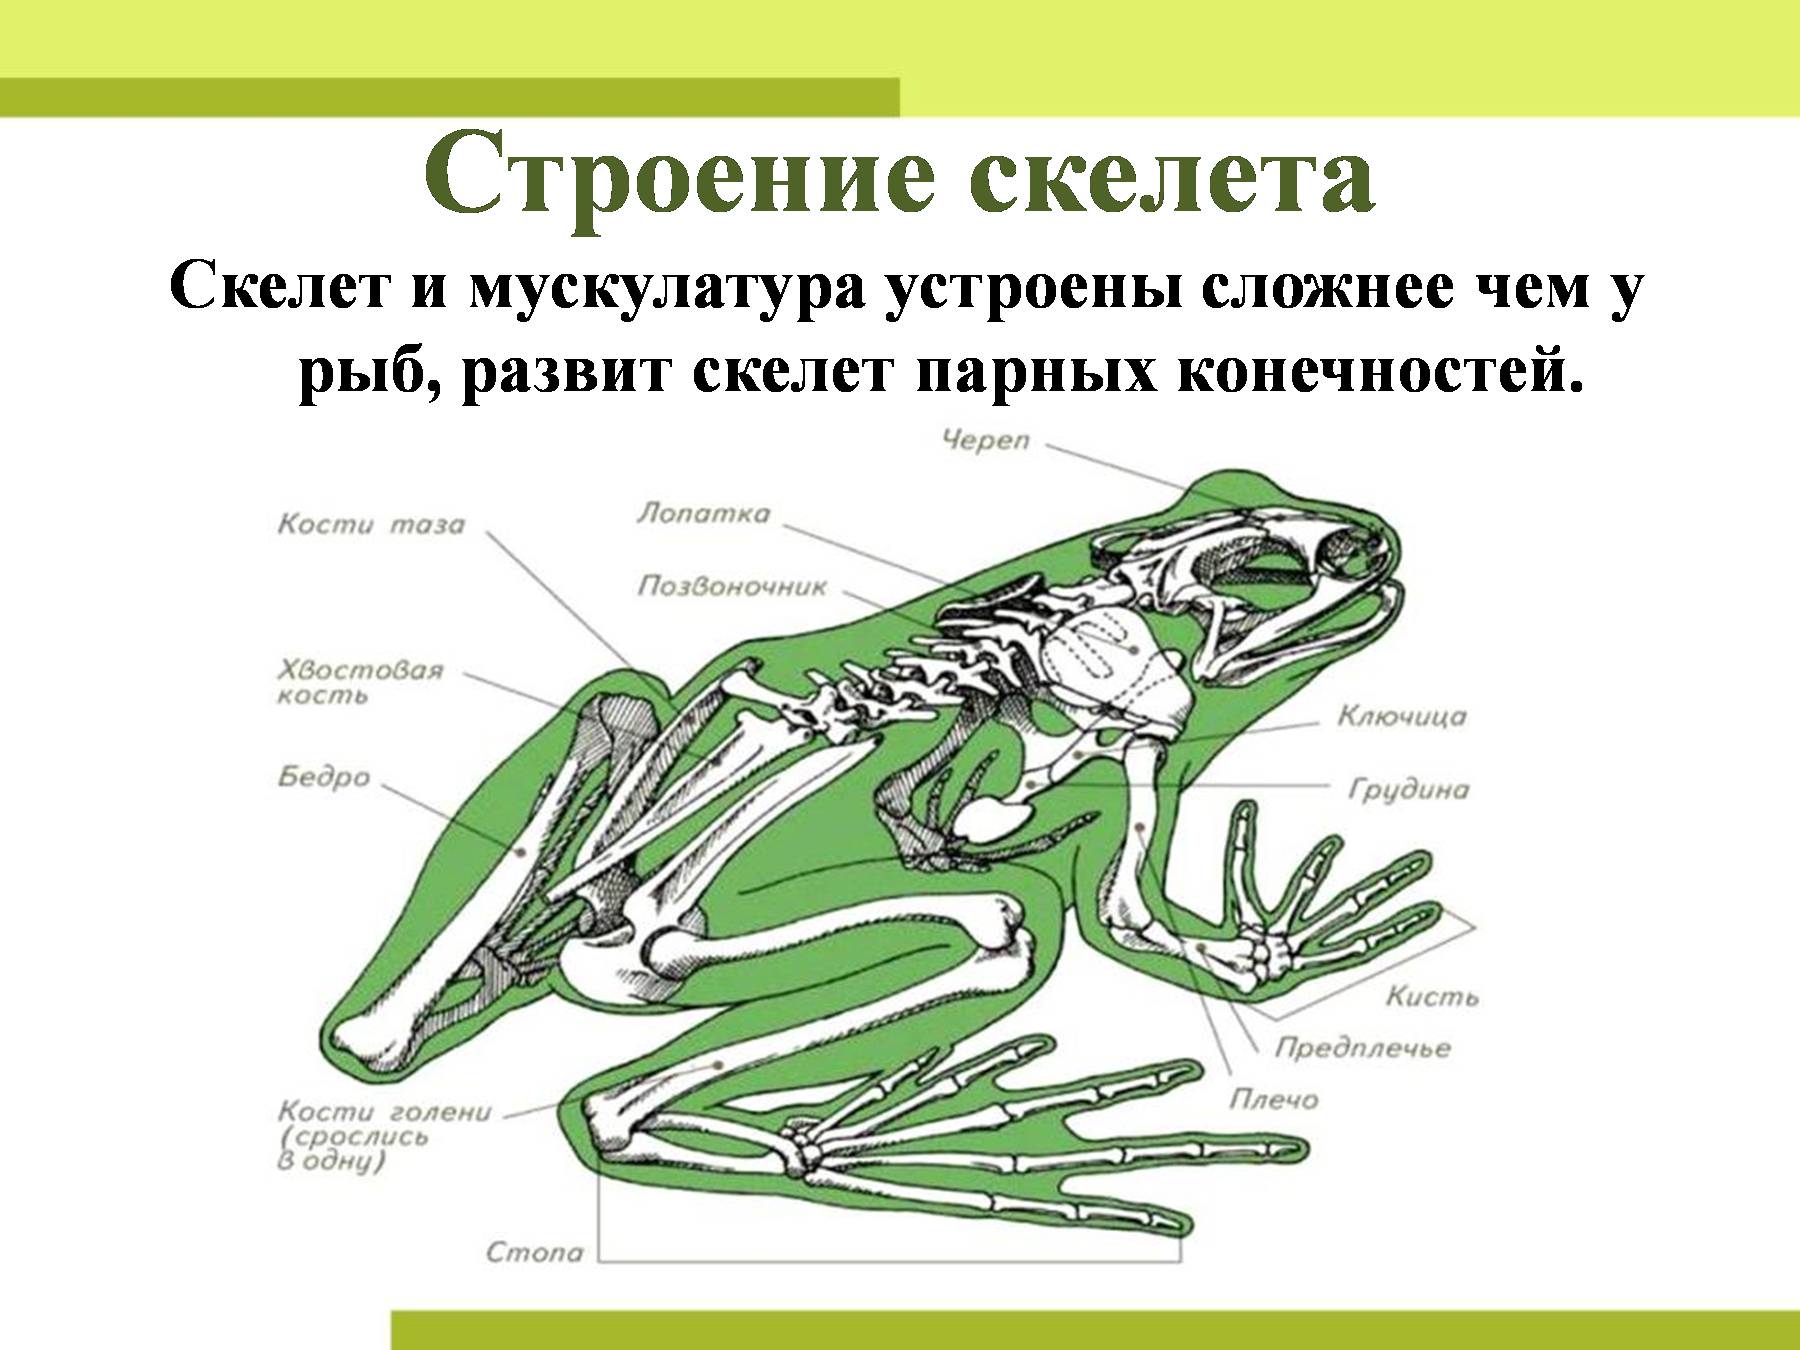 Скелет передних конечностей лягушки. Скелет конечностей амфибий. Скелет конечностей земноводных. Строение скелета амфибий. Земноводные строение скелета задних конечностей.